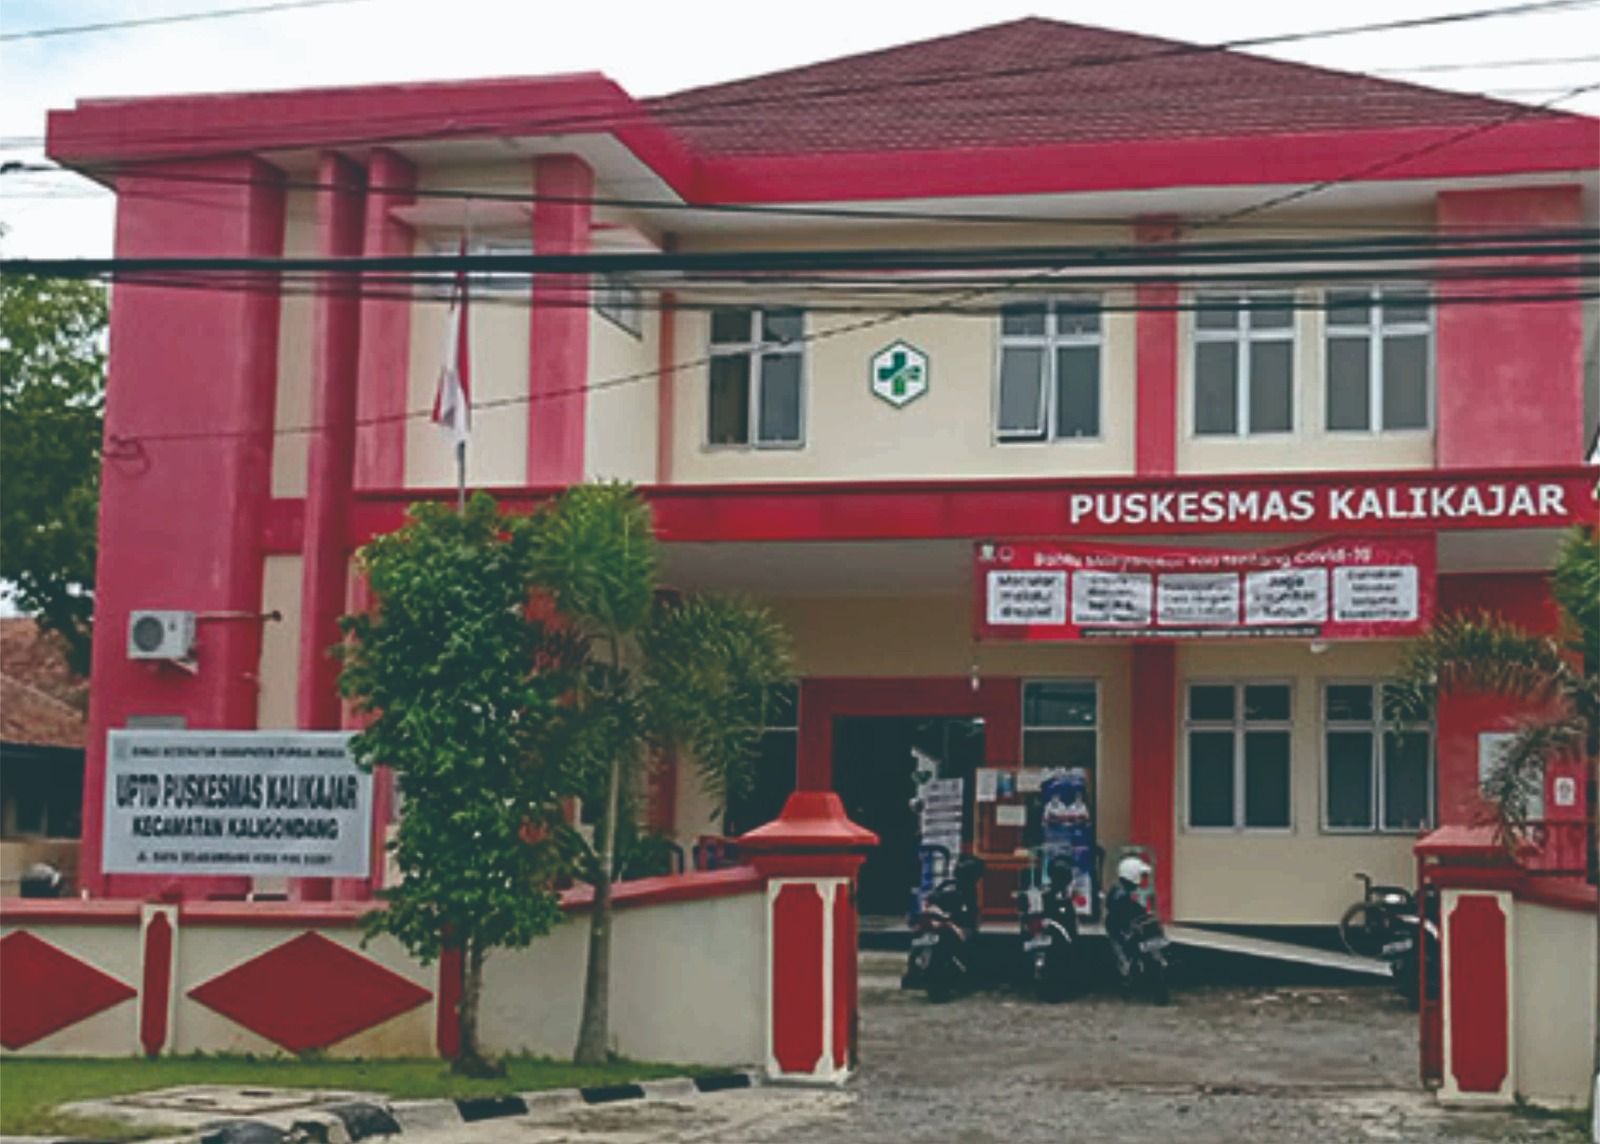 Puskesmas Kalikajar, Termasuk 50 Puskesmas dengan IKS Tertinggi di Jawa Tengah